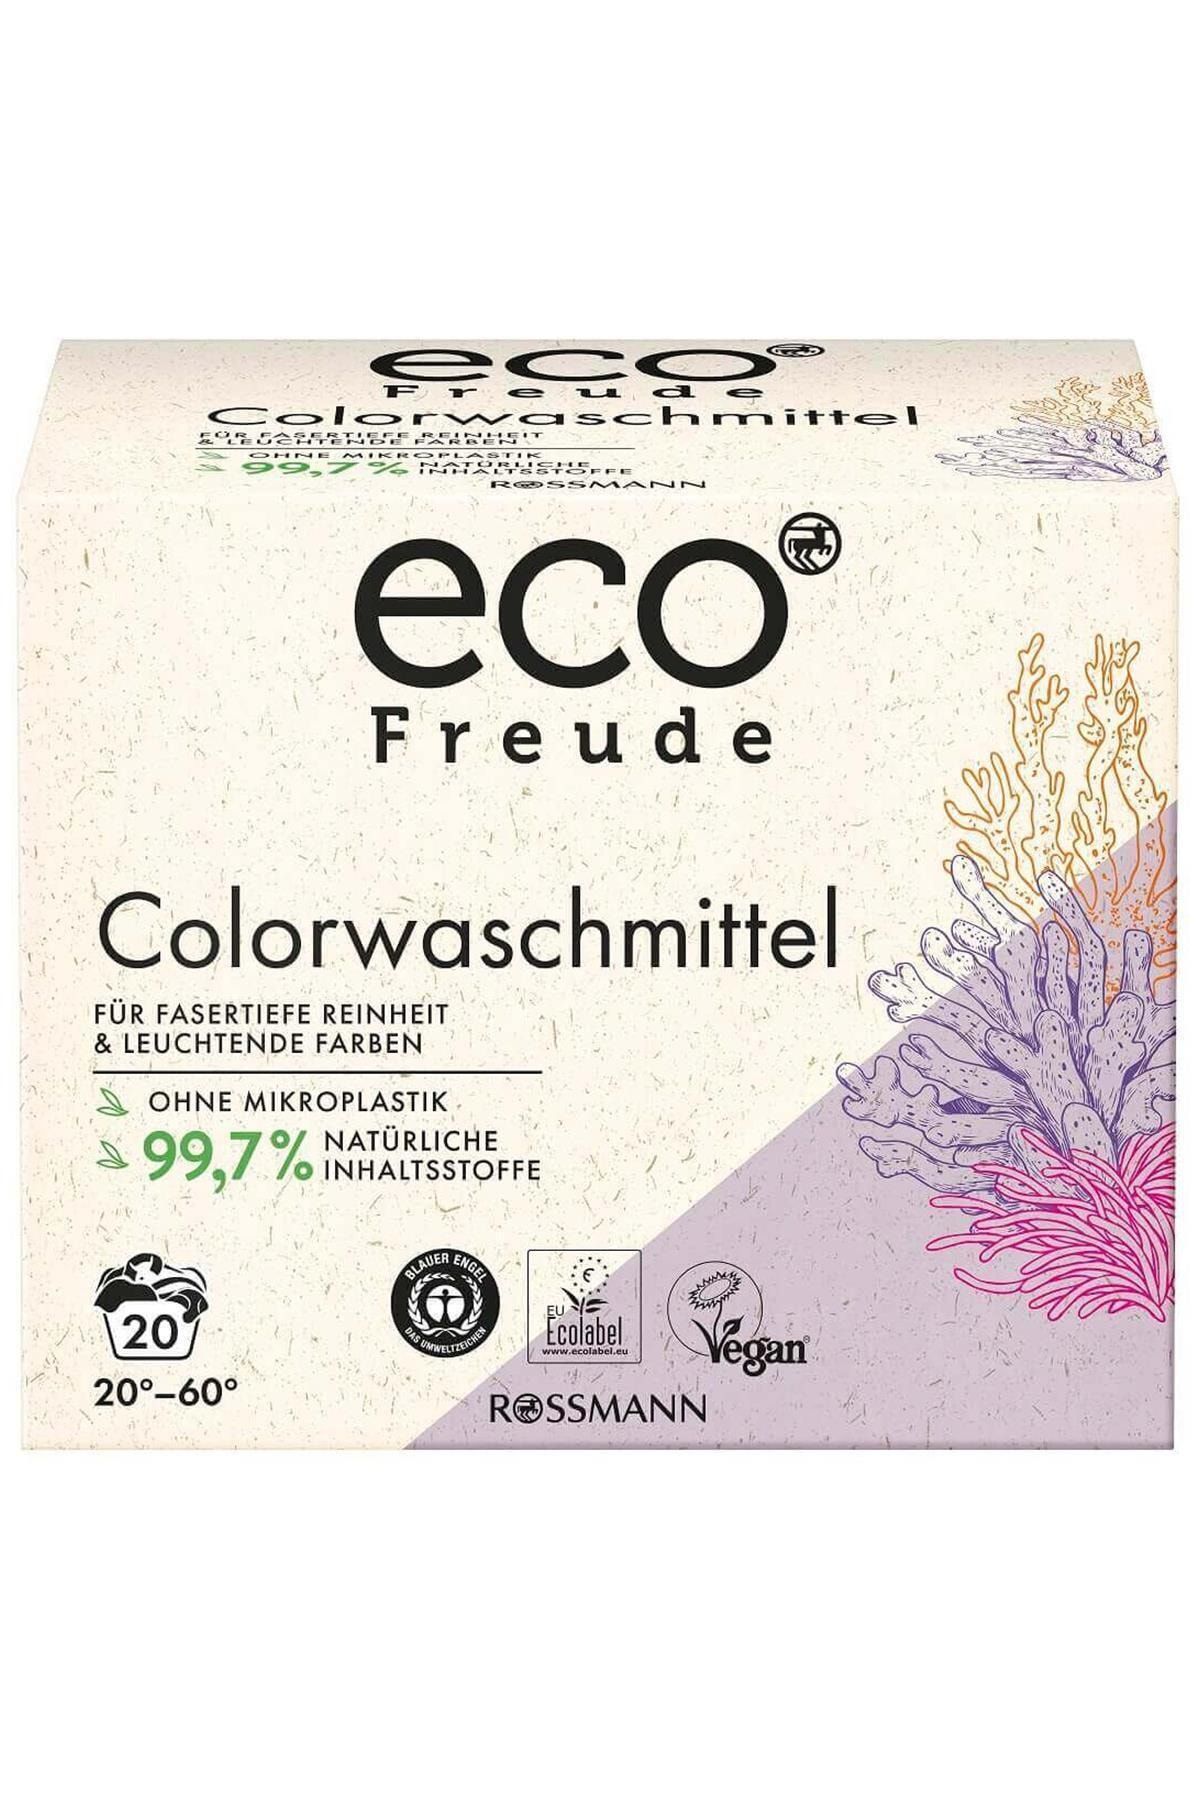 Eco Freude Toz Çamaşır Deterjanı Renkliler Için 1350 Gr Kategori: Çamaşır Deterjanı